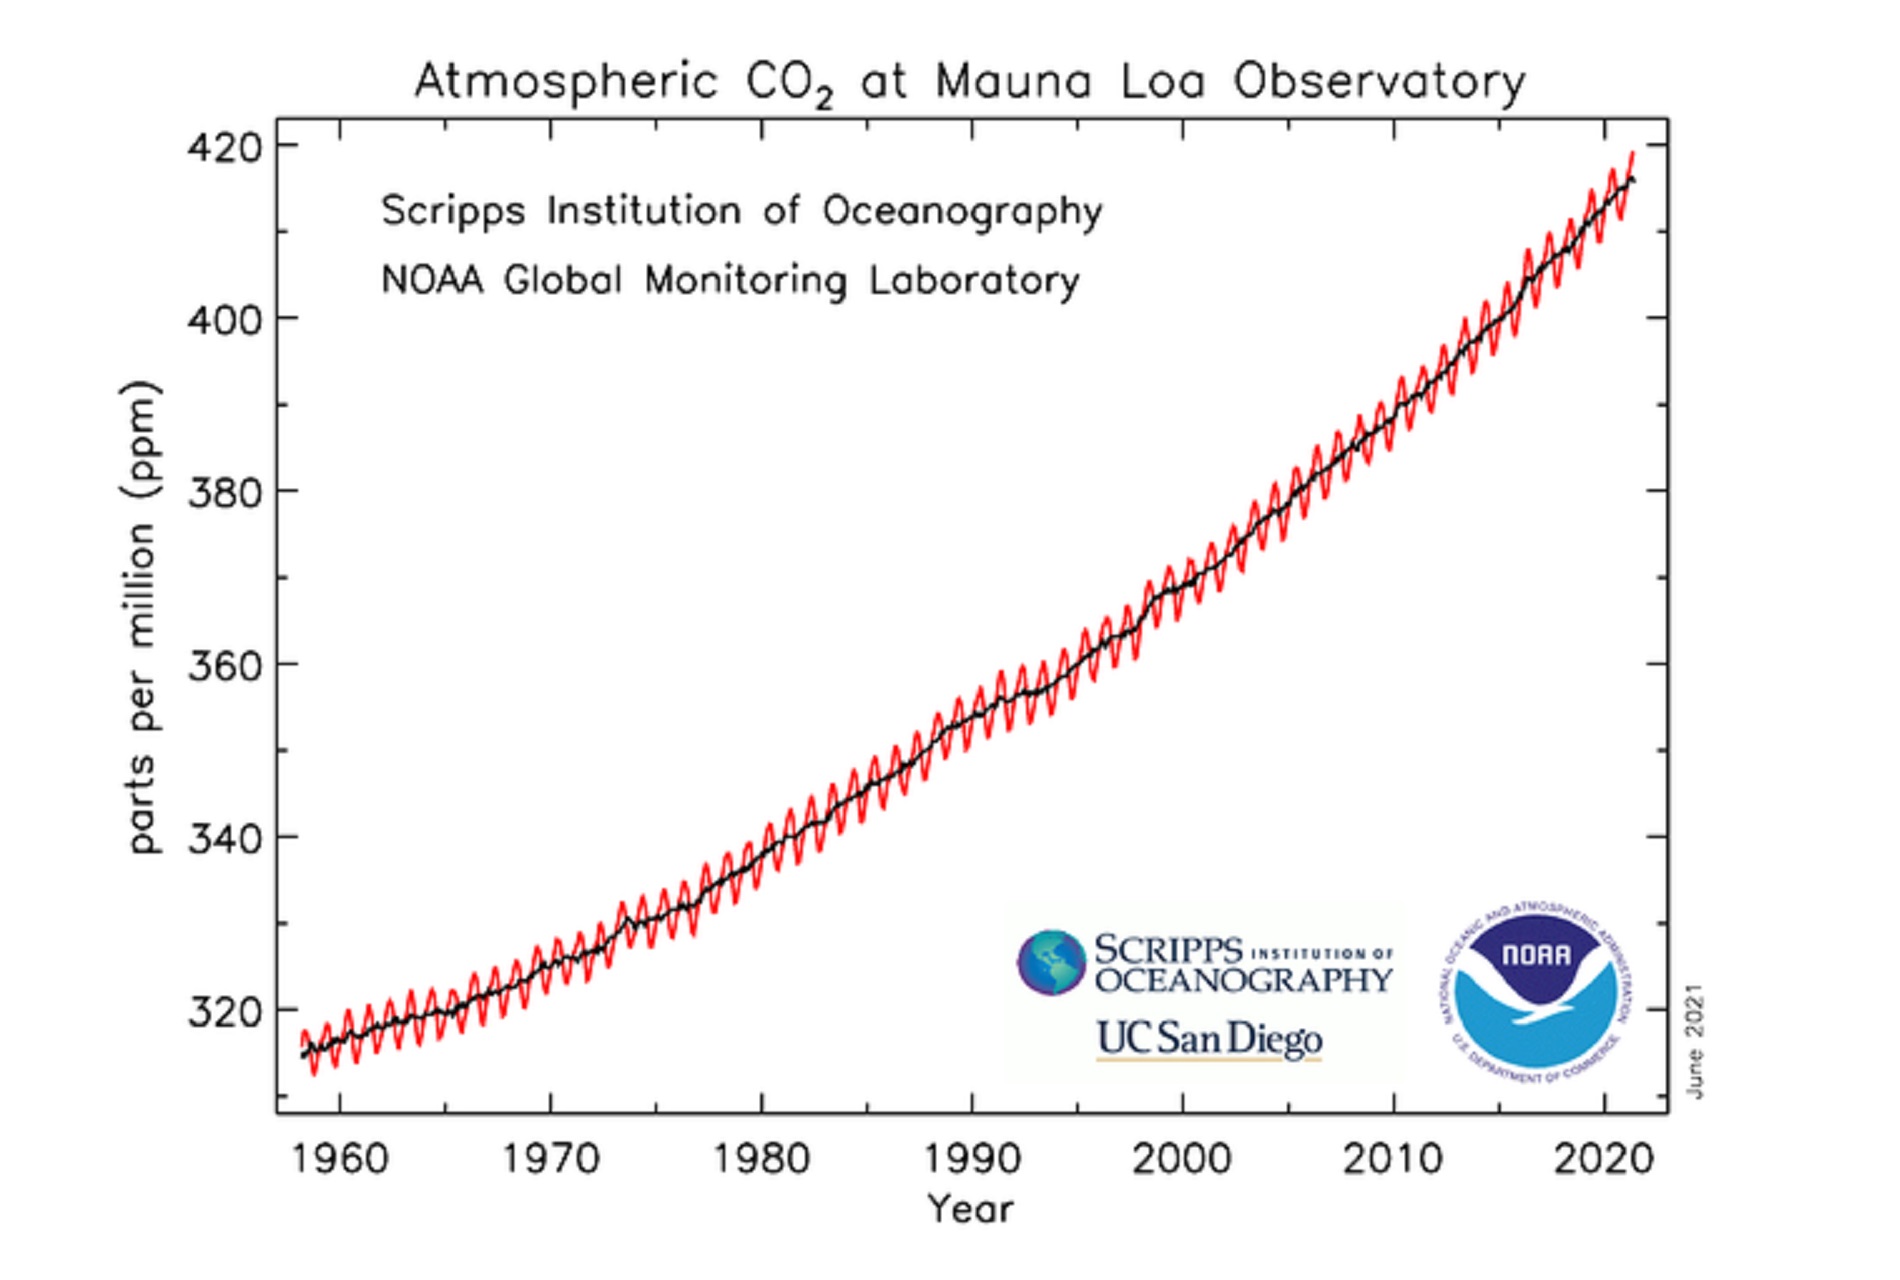 La concentrazione dell'anidride carbonica in atmosfera misurata a Mauna Loa, alle Hawaii